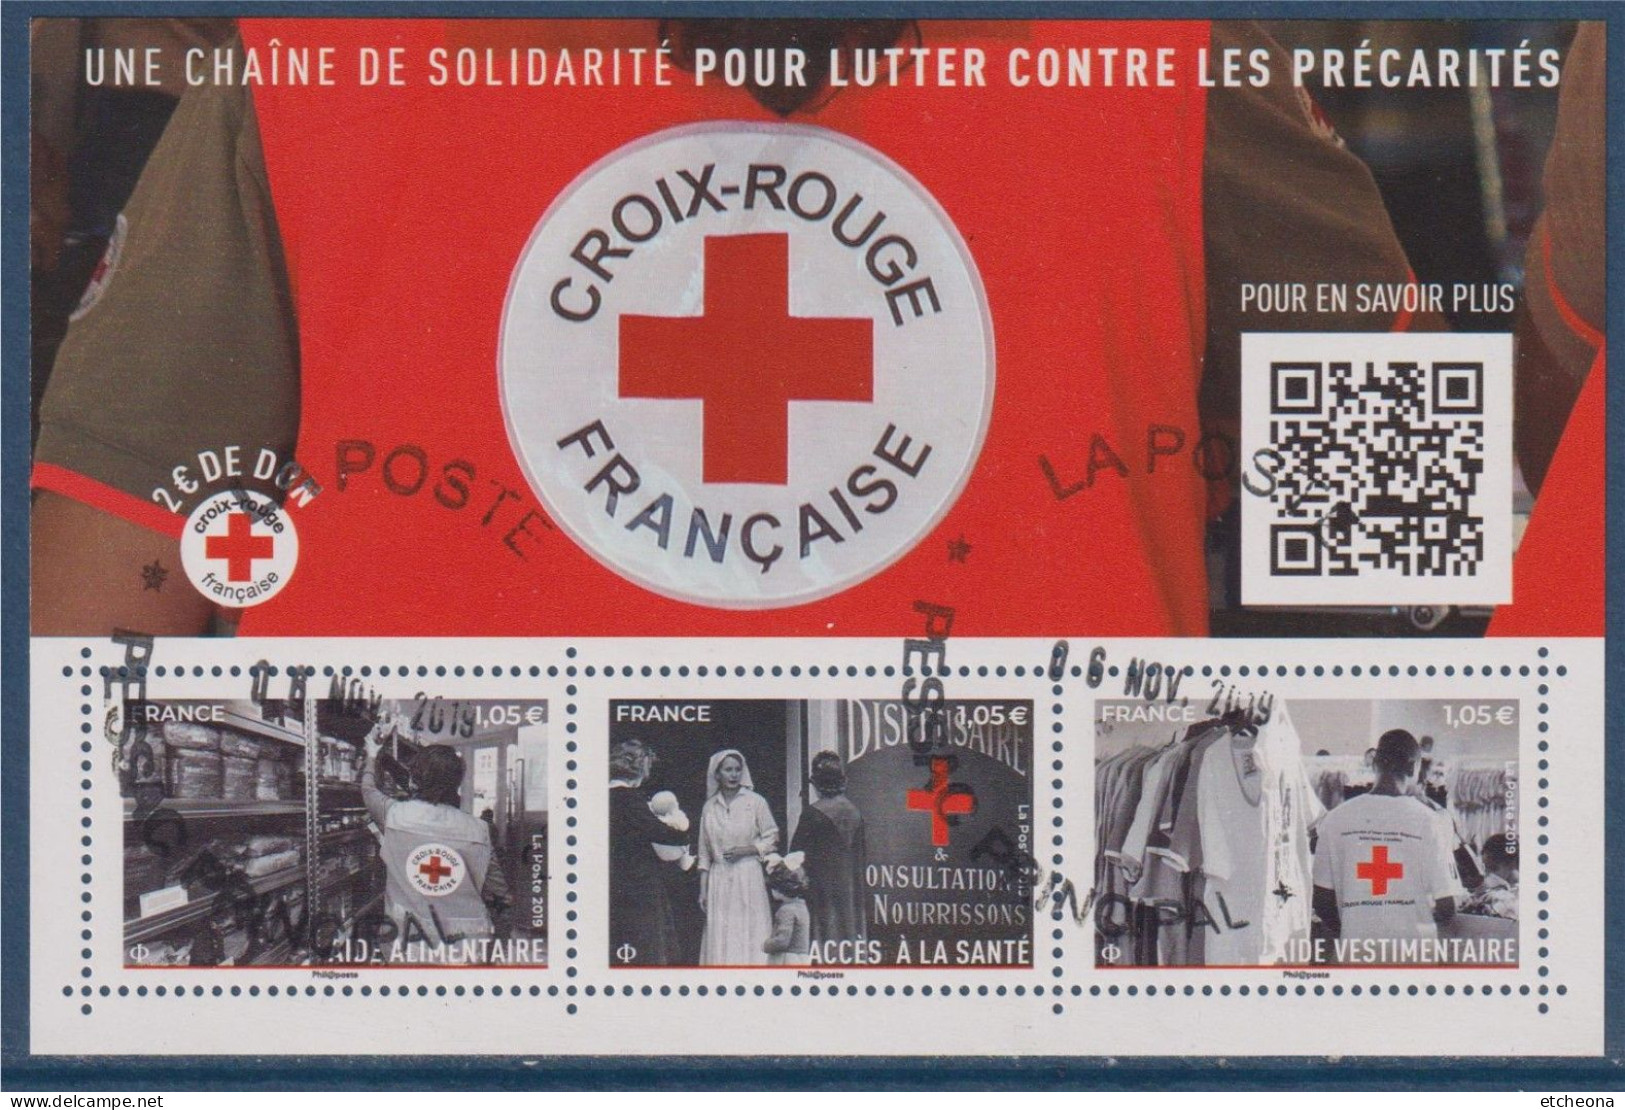 Croix Rouge 2019 Bloc Oblitéré F5350, Aide Alimentaire 5350, Vestimentaire 5352, Et Accès à La Santé 5351 - Rode Kruis